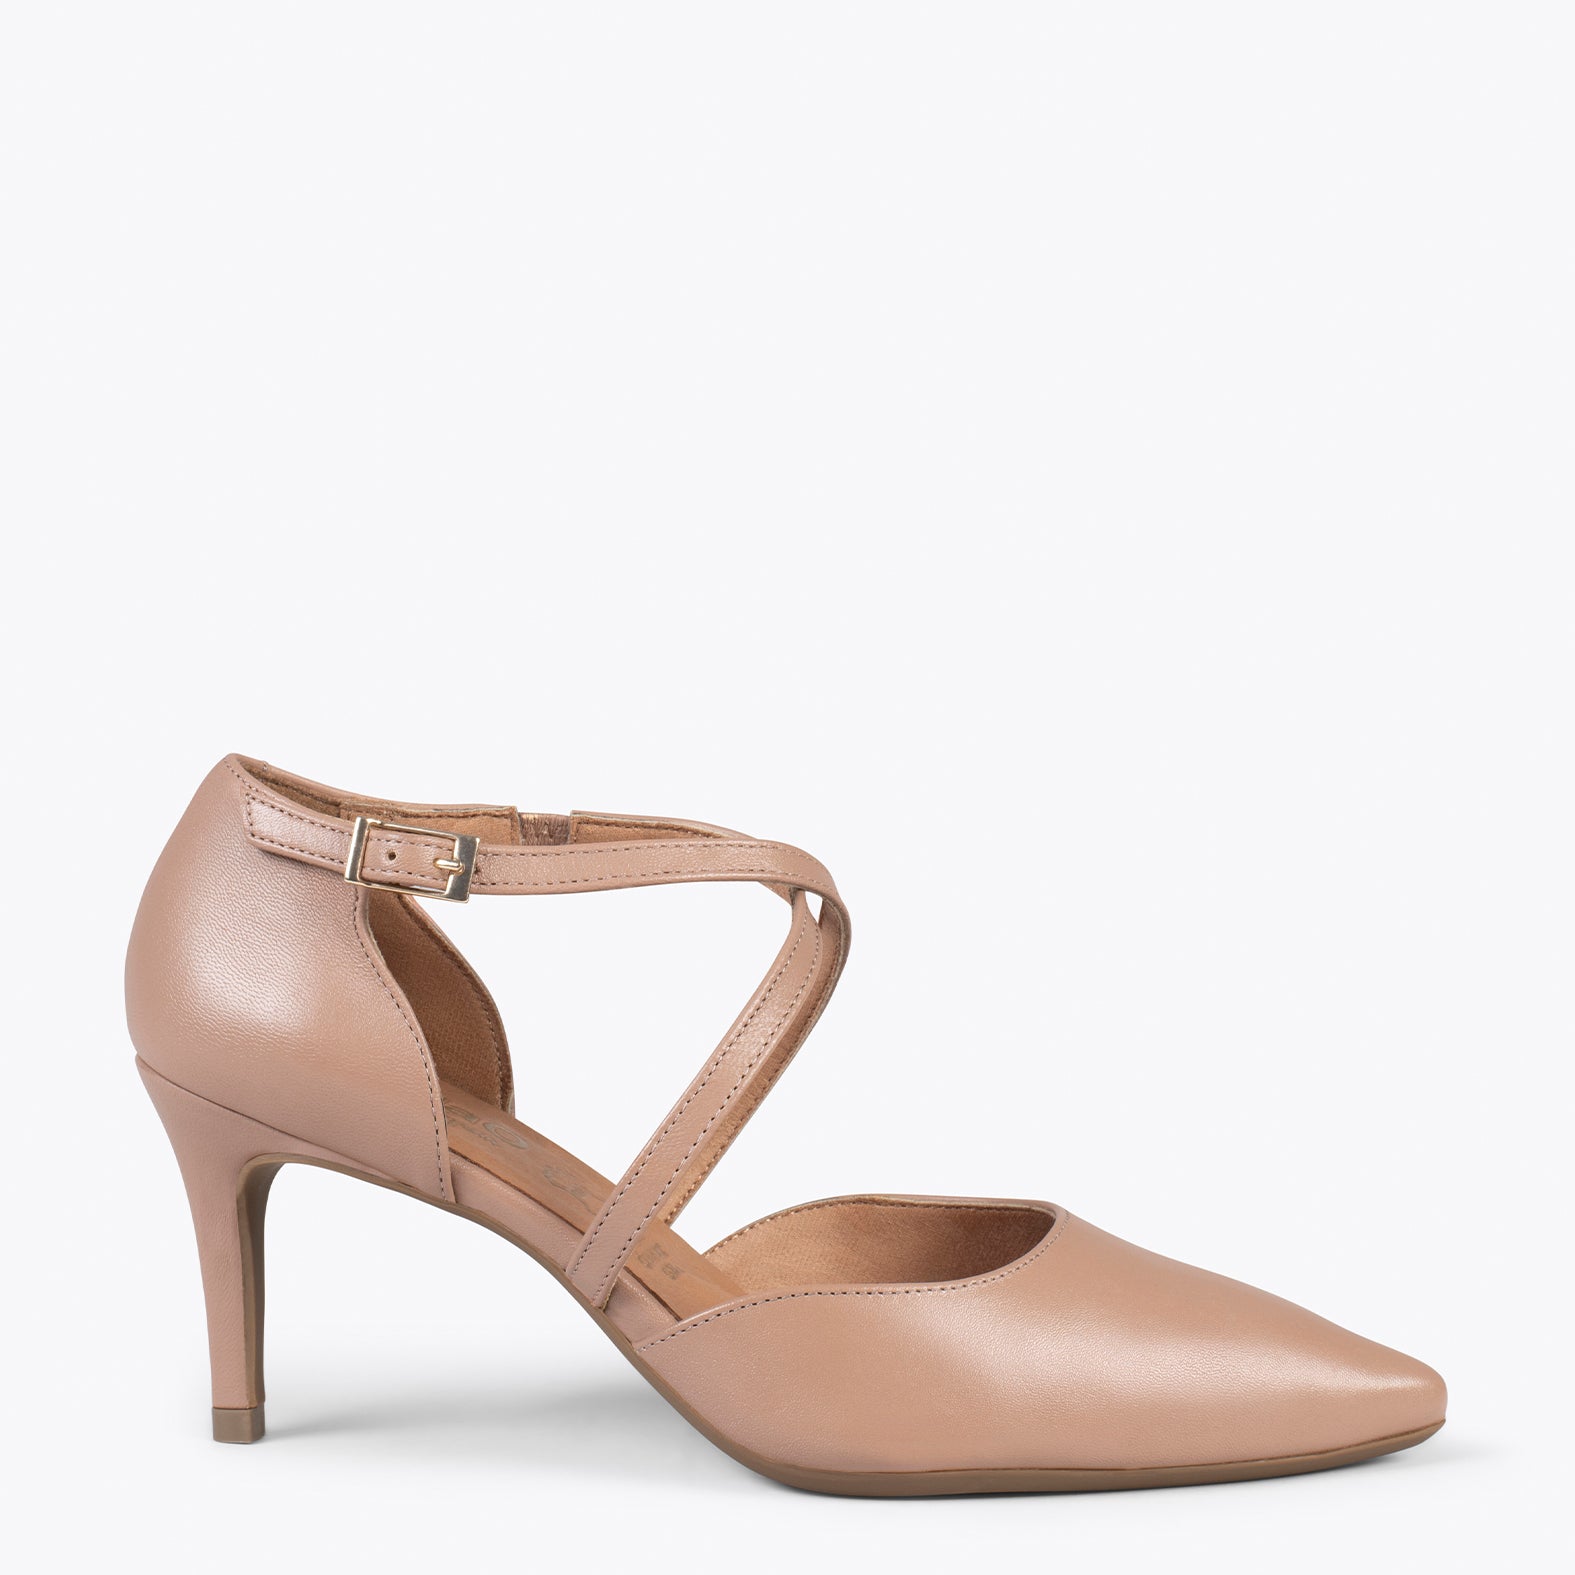 COCKTAIL - TAUPE elegant high heel stilettos